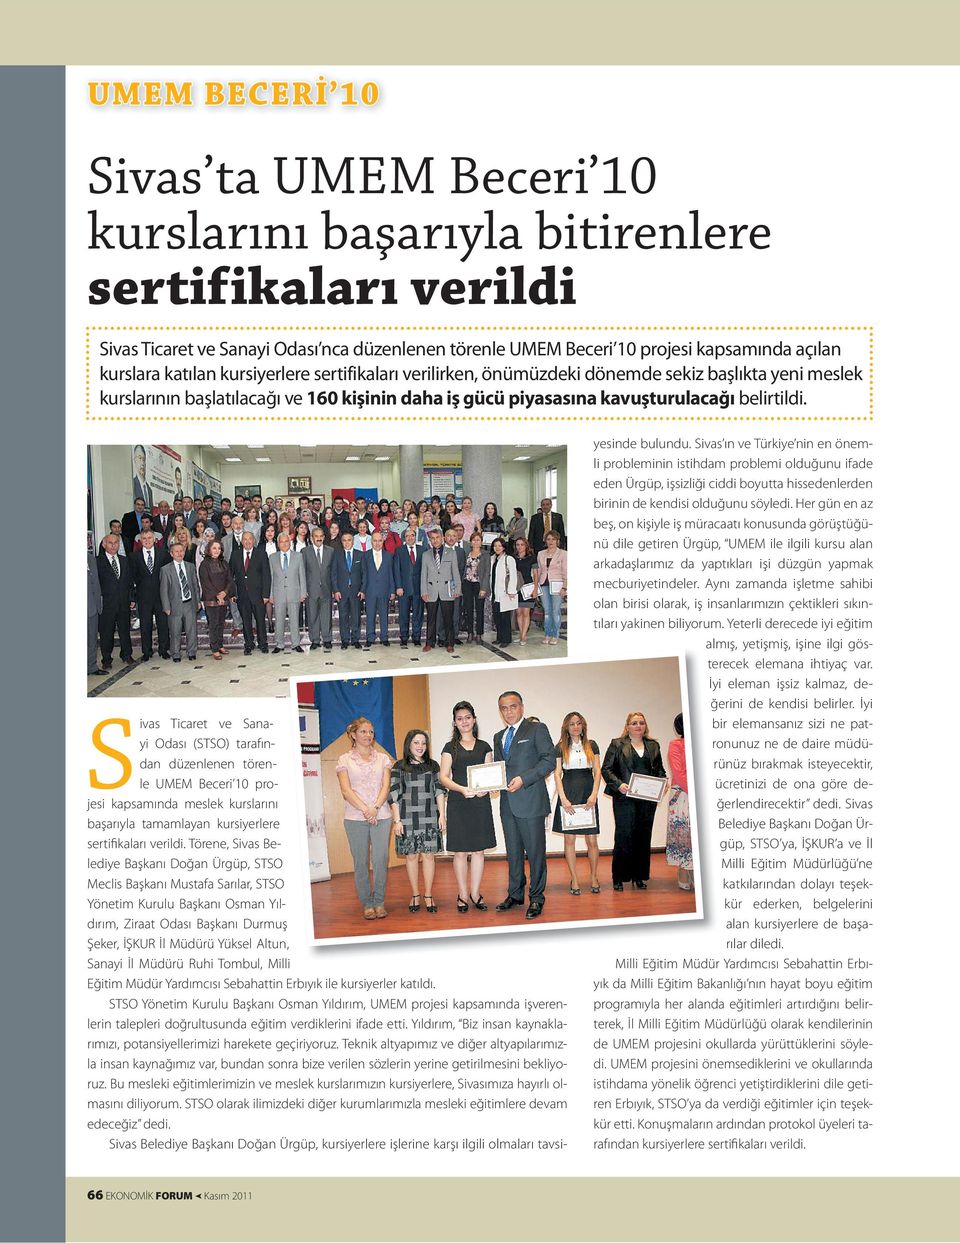 Sivas Ticaret ve Sanayi Odası (STSO) tarafından düzenlenen törenle UMEM Beceri 10 projesi kapsamında meslek kurslarını başarıyla tamamlayan kursiyerlere sertifikaları verildi.